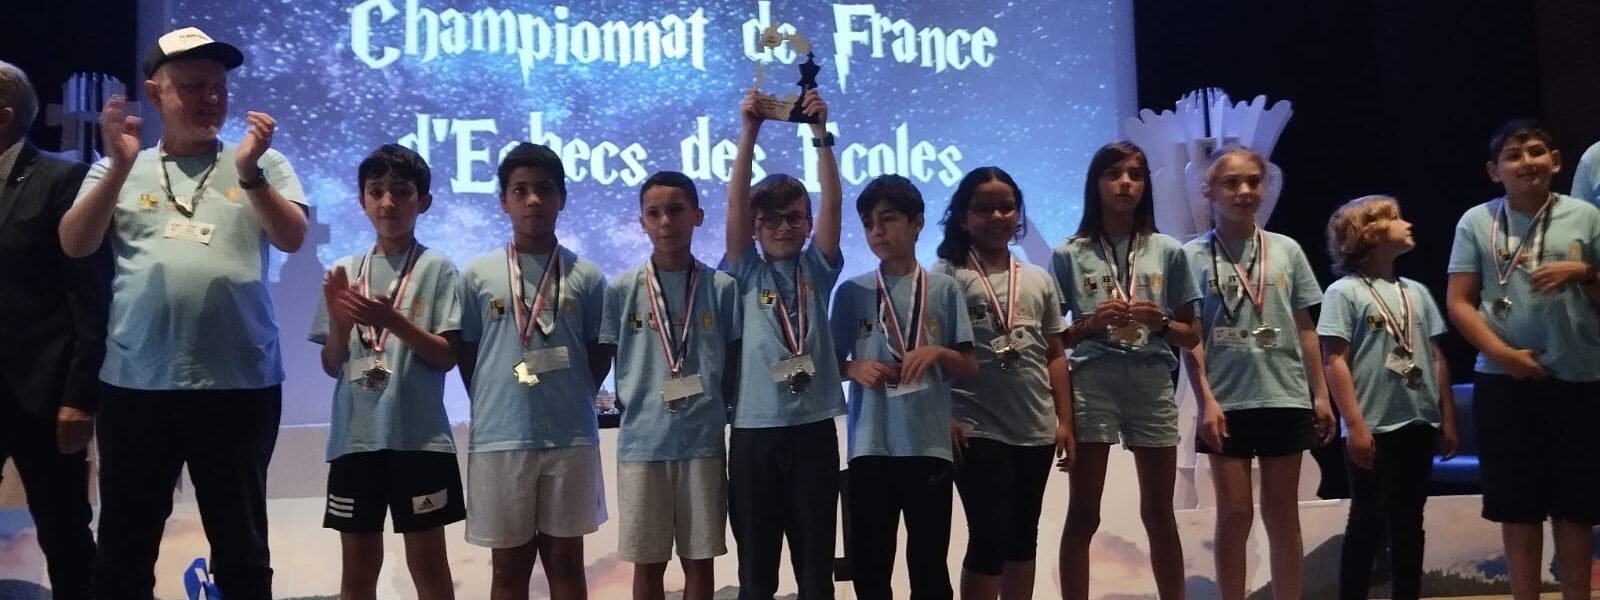 Les Pyrénées Orientales enregistrent une 7ème place au Championnat de France des écoles avec Perpignan Jean-Jacques Rousseau !